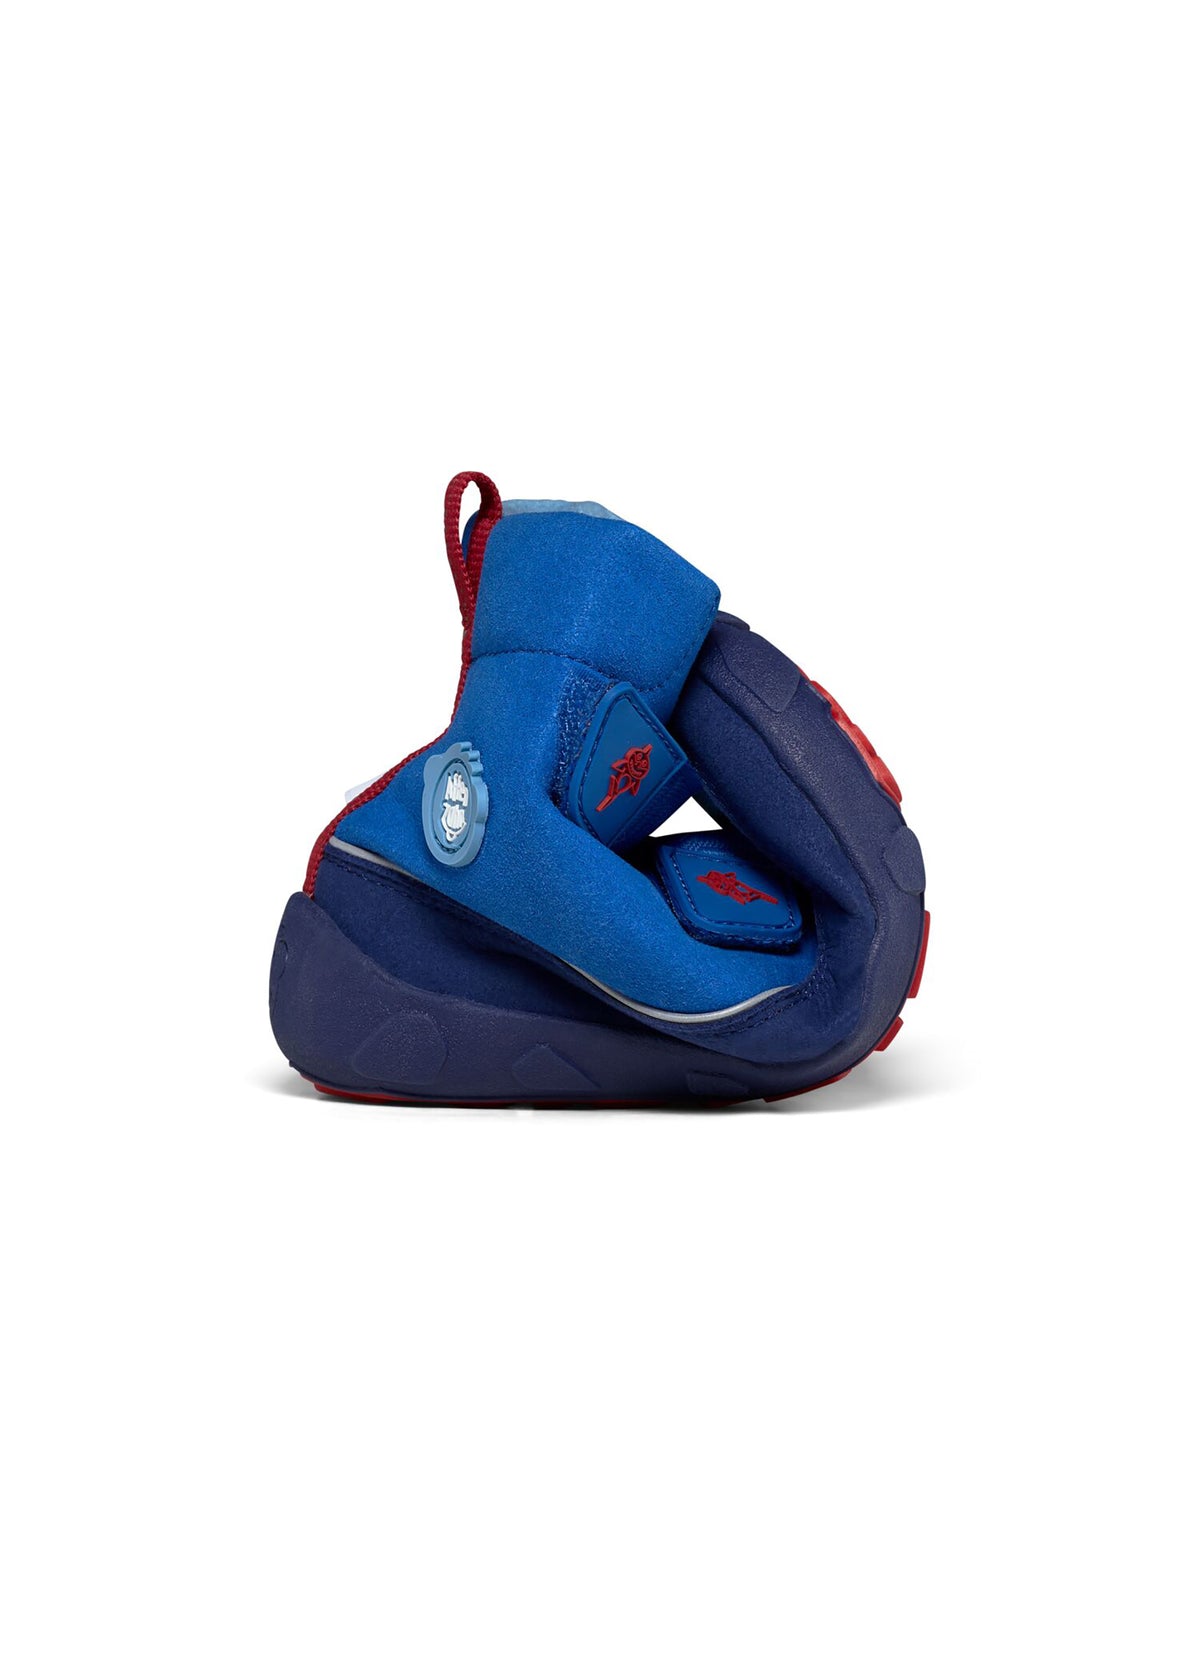 Barfotaskor för barn - Chamude Comfy Shark, vinterskor med TEX-membran - blå, röd